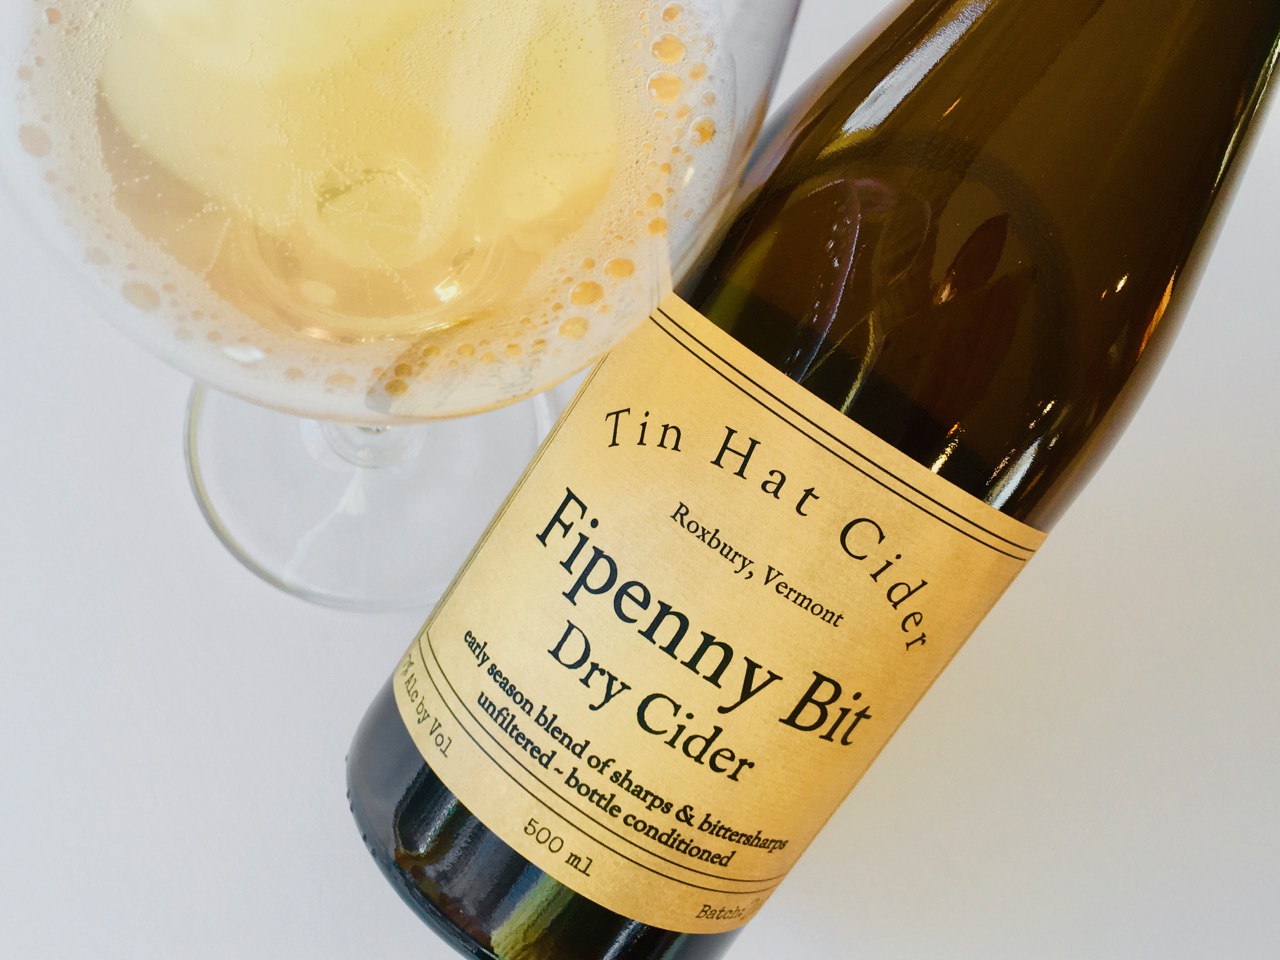 Tin Hat Cider Fipenny Bit Dry Cider